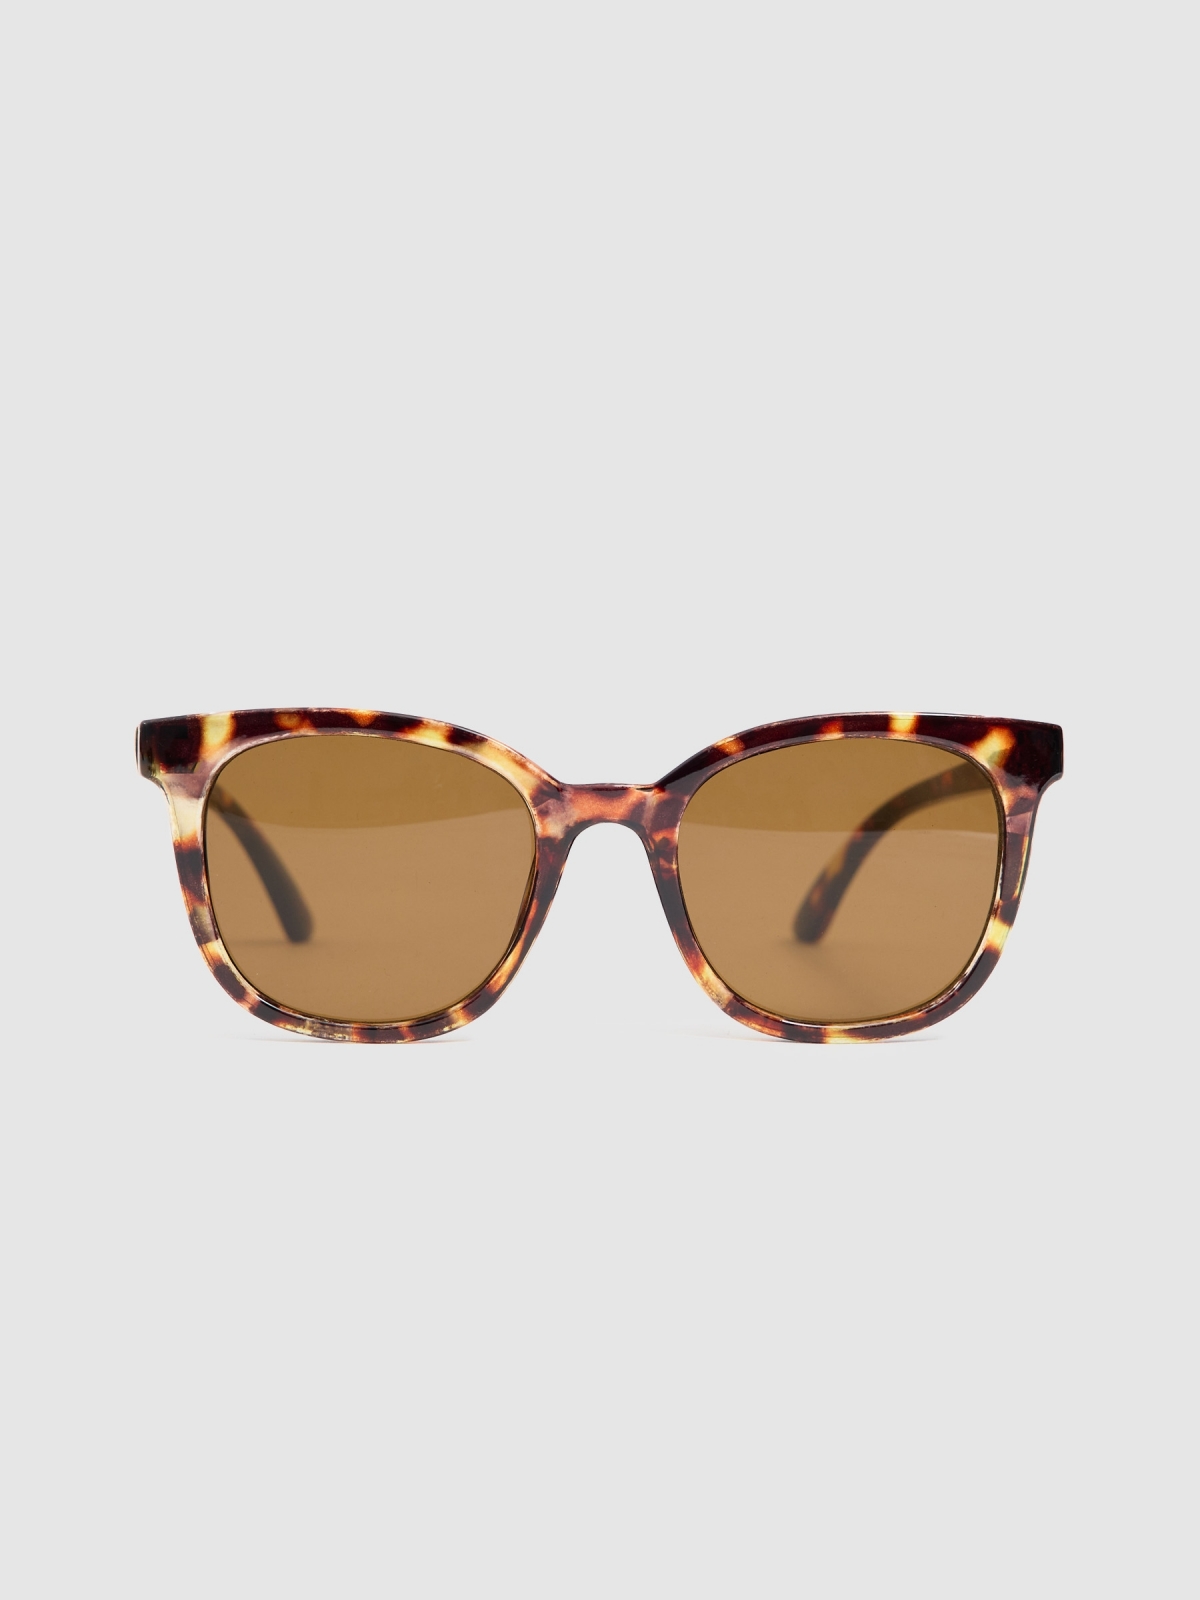 tortoiseshell frame sunglasses light brown